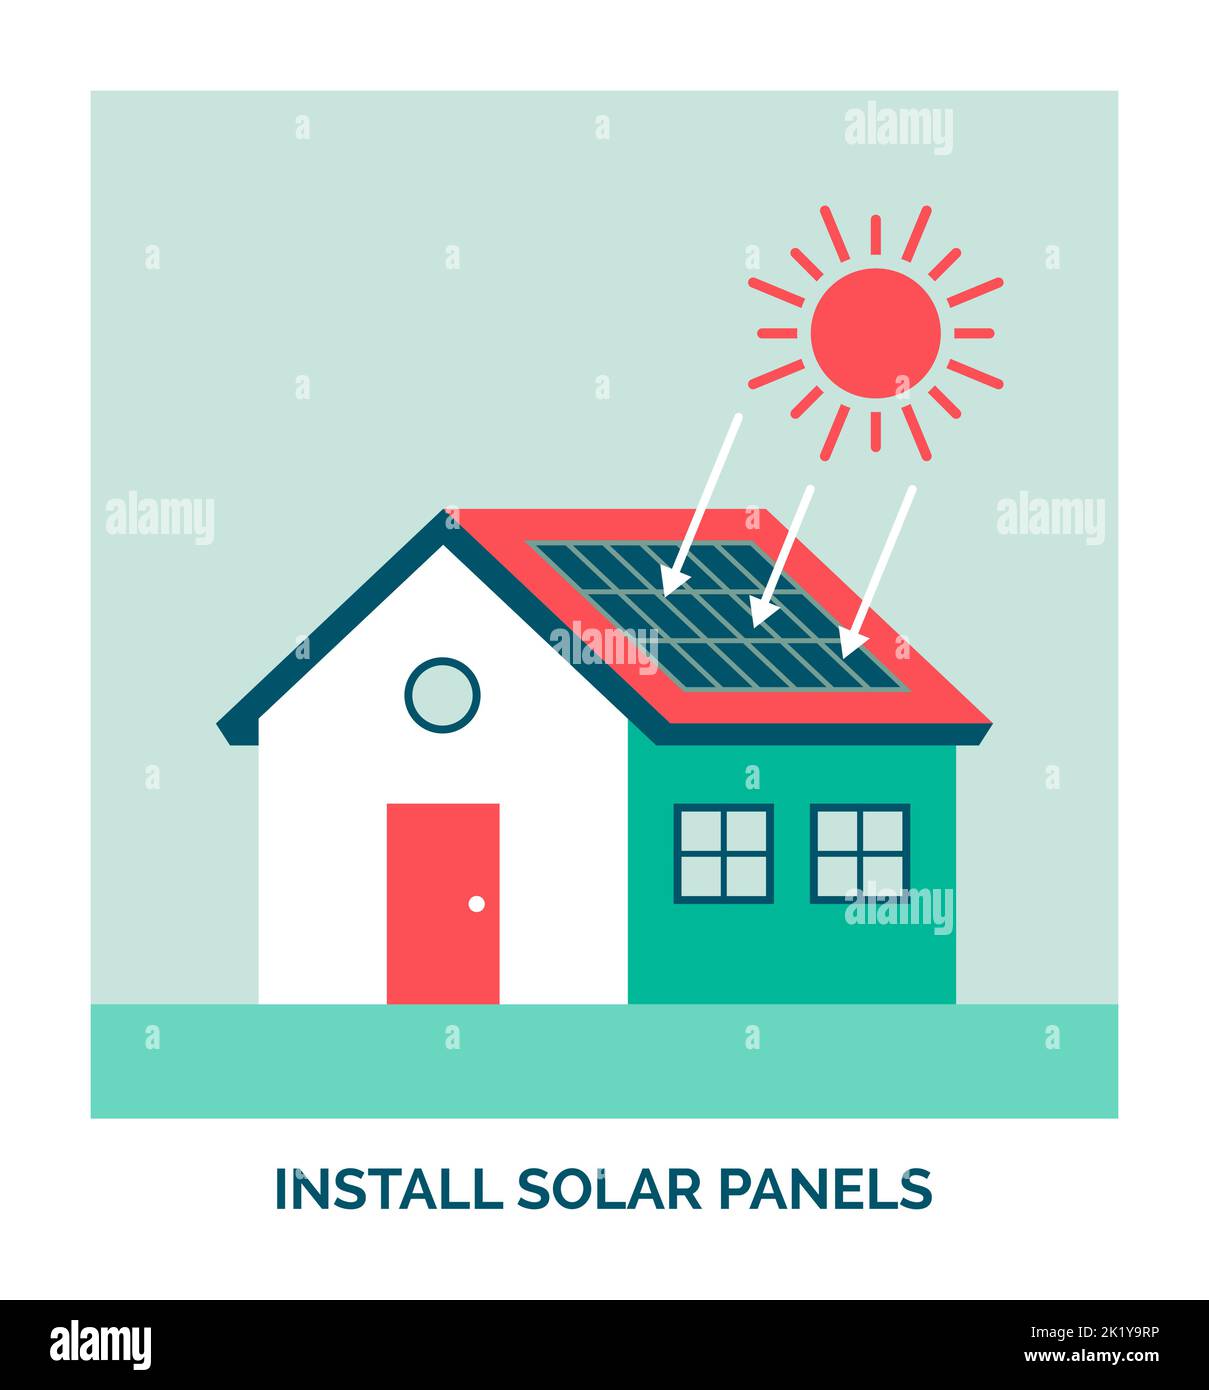 Maison écologique : installer des panneaux solaires photovoltaïques Illustration de Vecteur